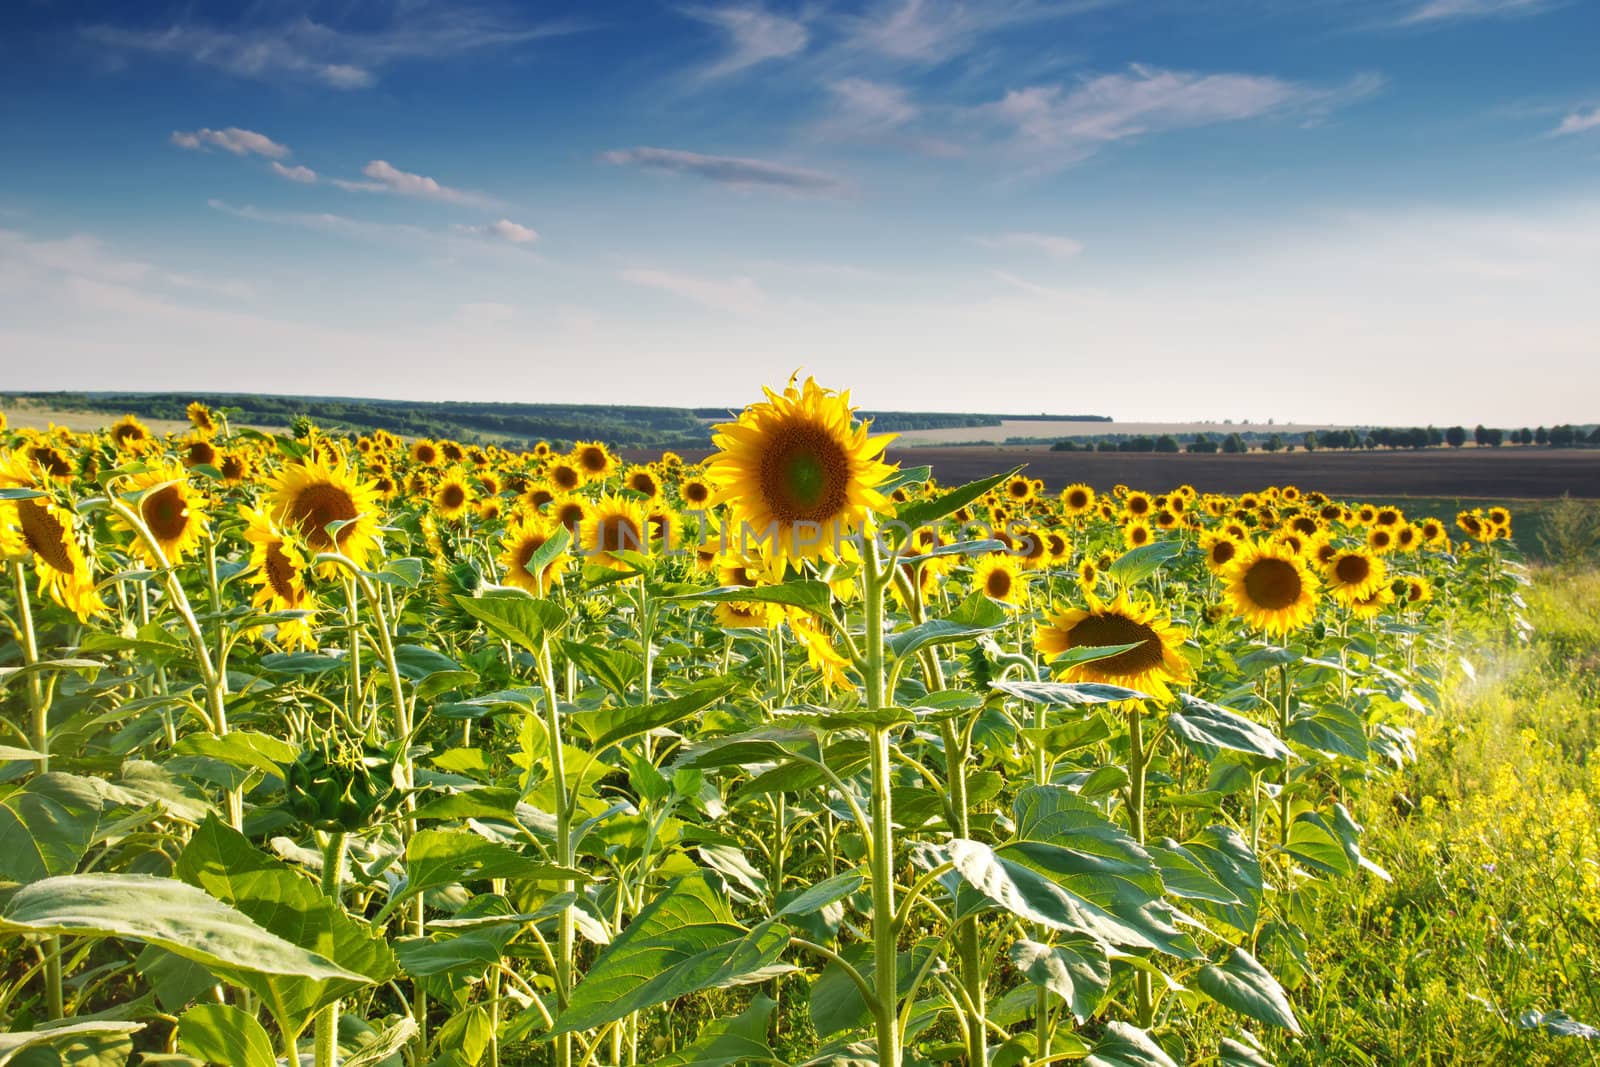 Green field, grass, sunflowers, blue sky